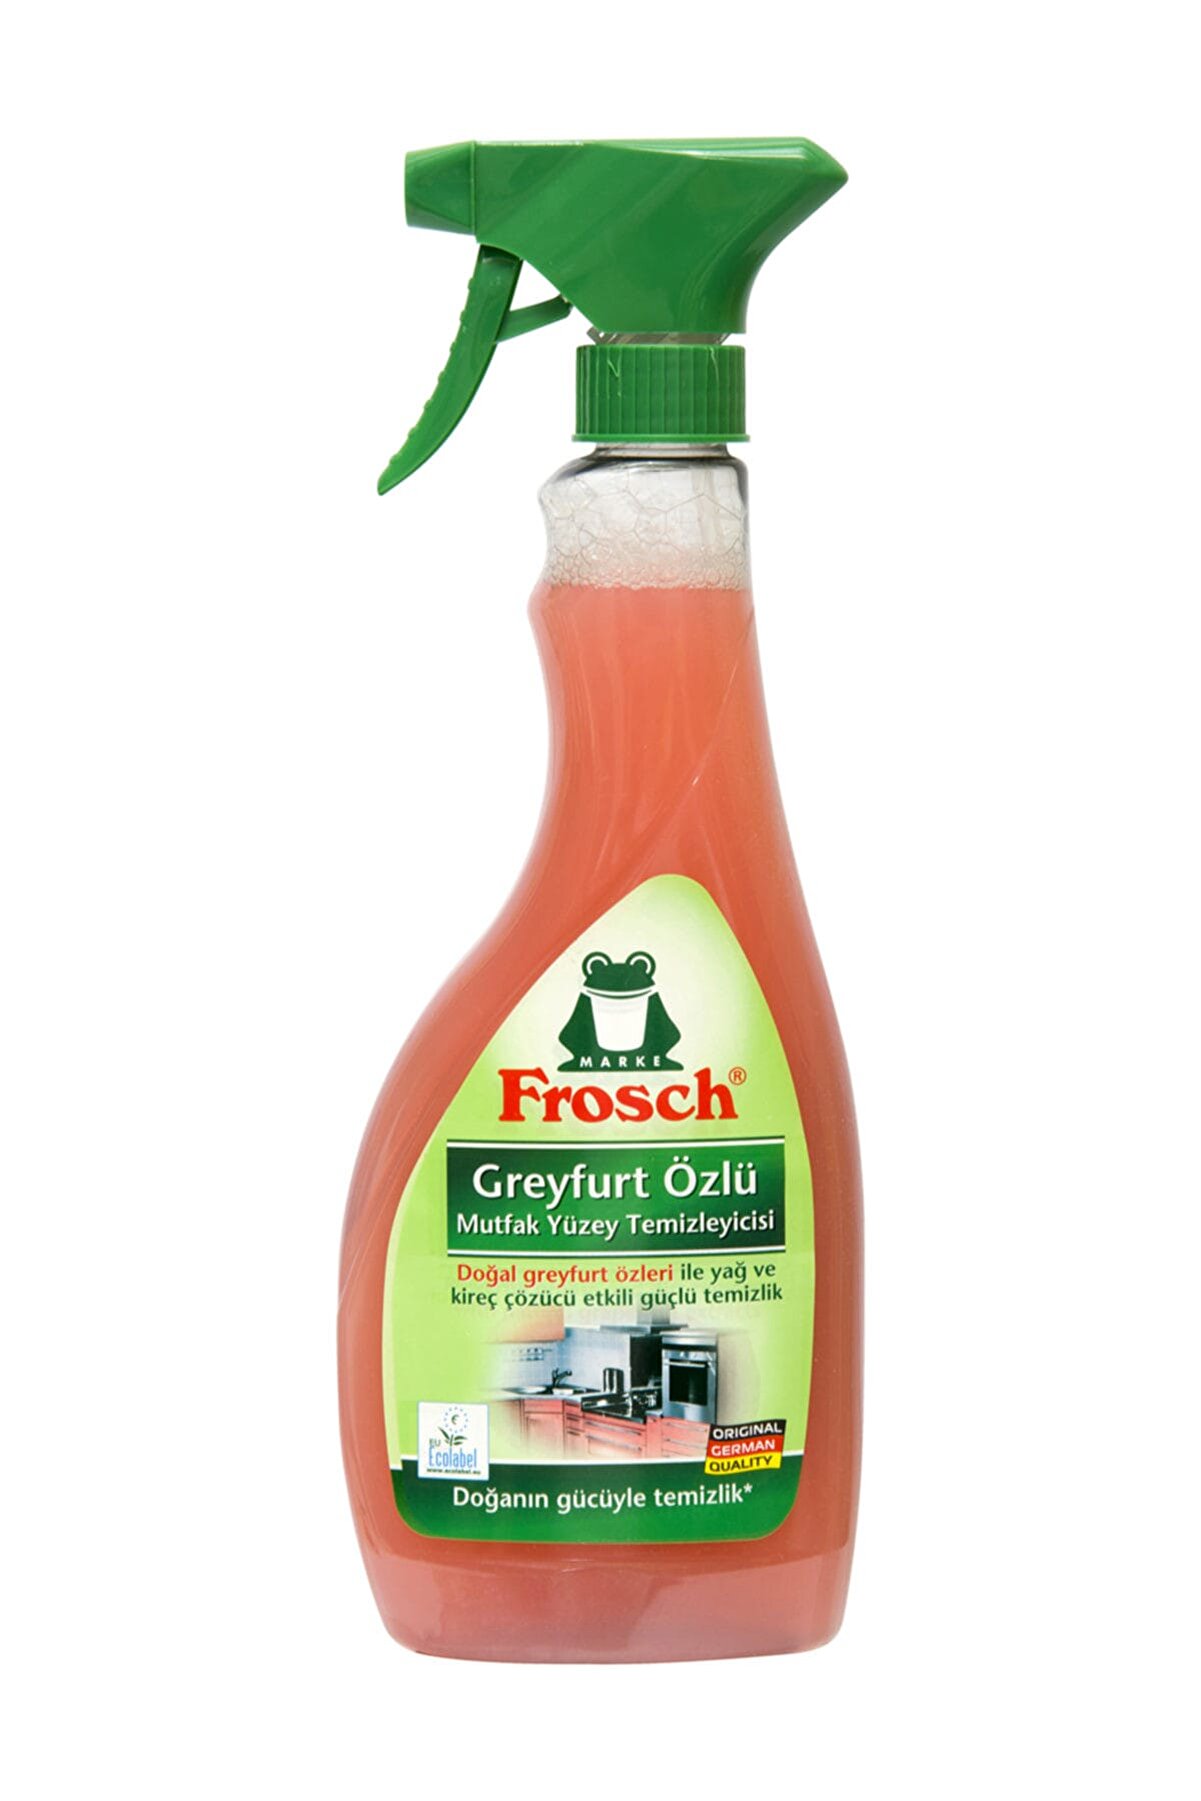 Frosch Greyfurt Özlü Mutfak Yüzey Temizleyici 500 ml